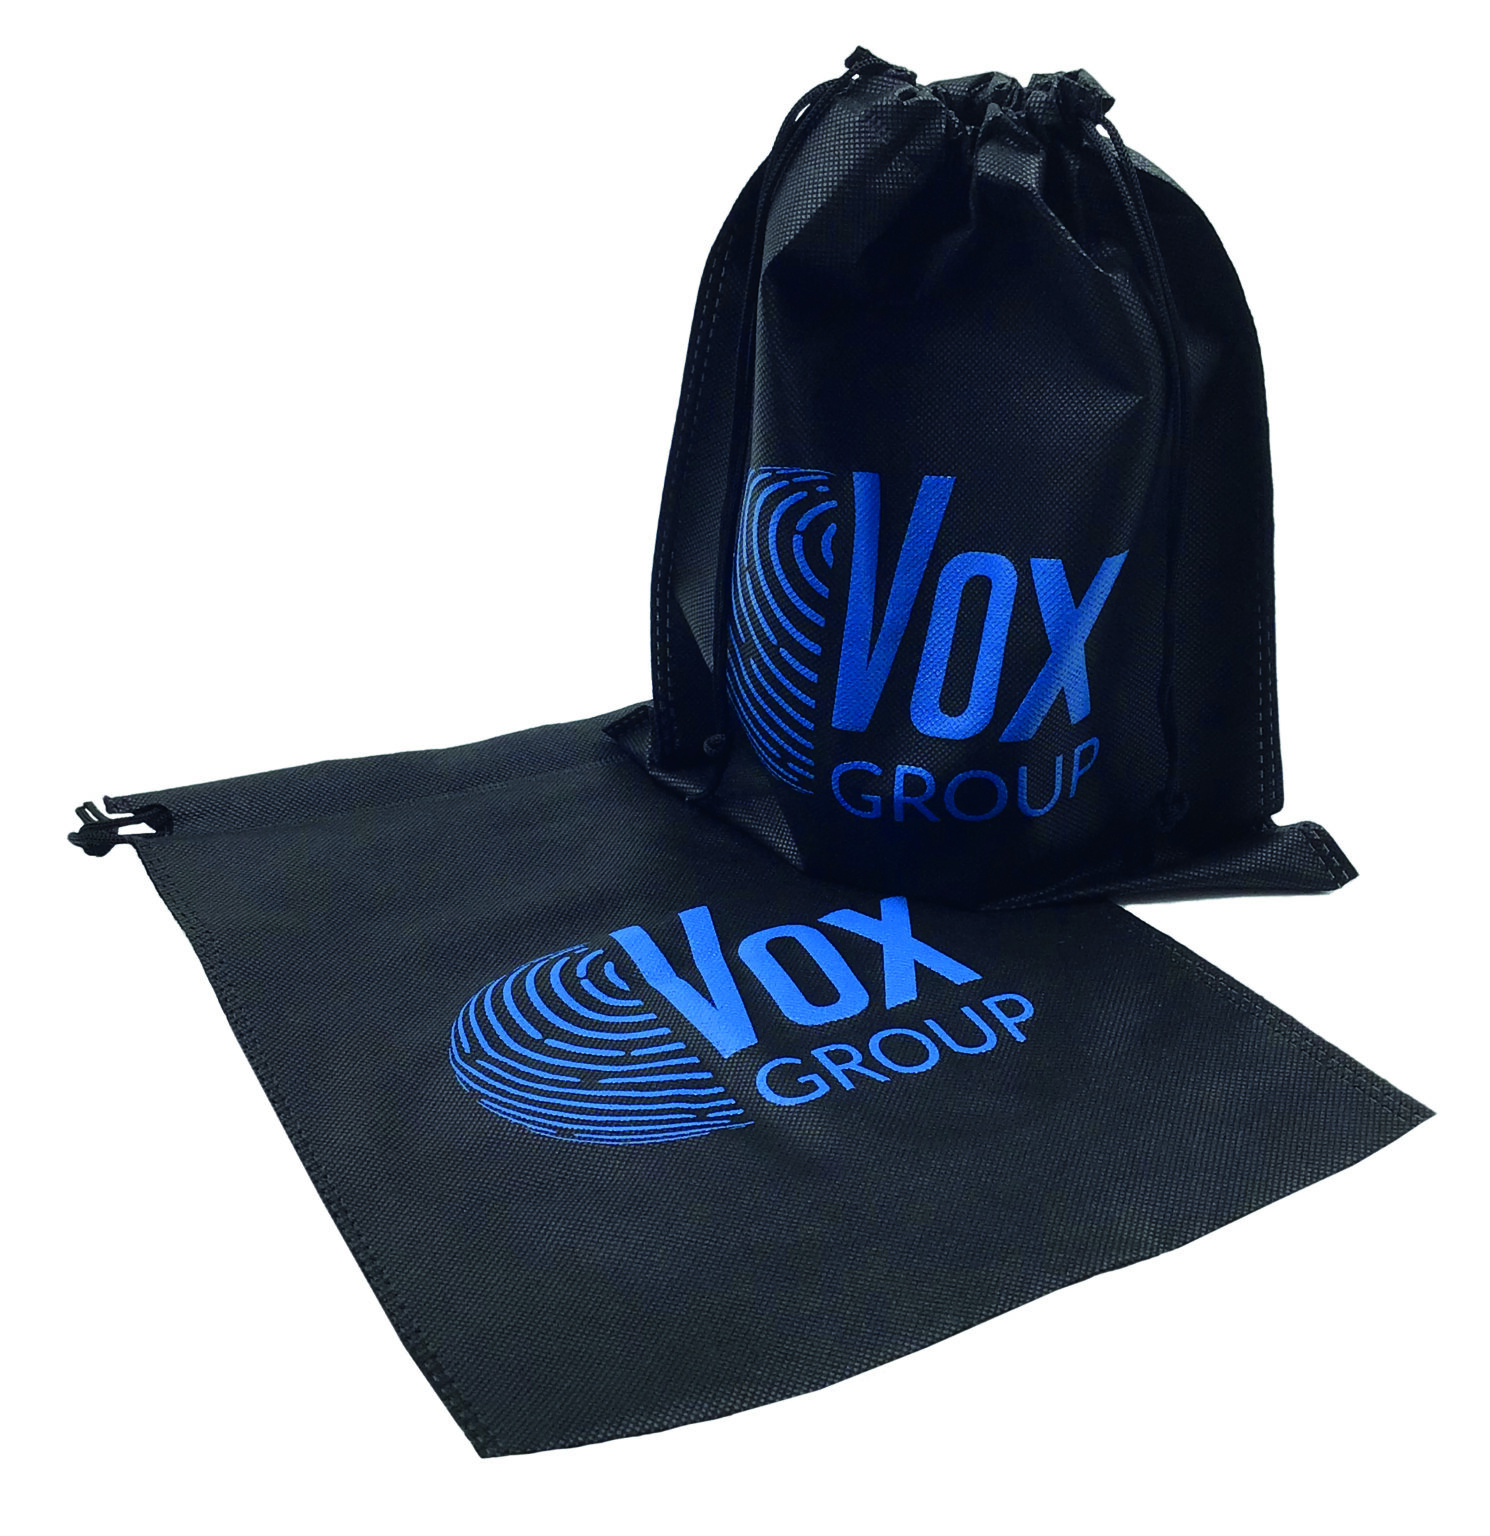 Vox Group sacchetto in TNT nero chiusura a strozzo stampa blu rifipack